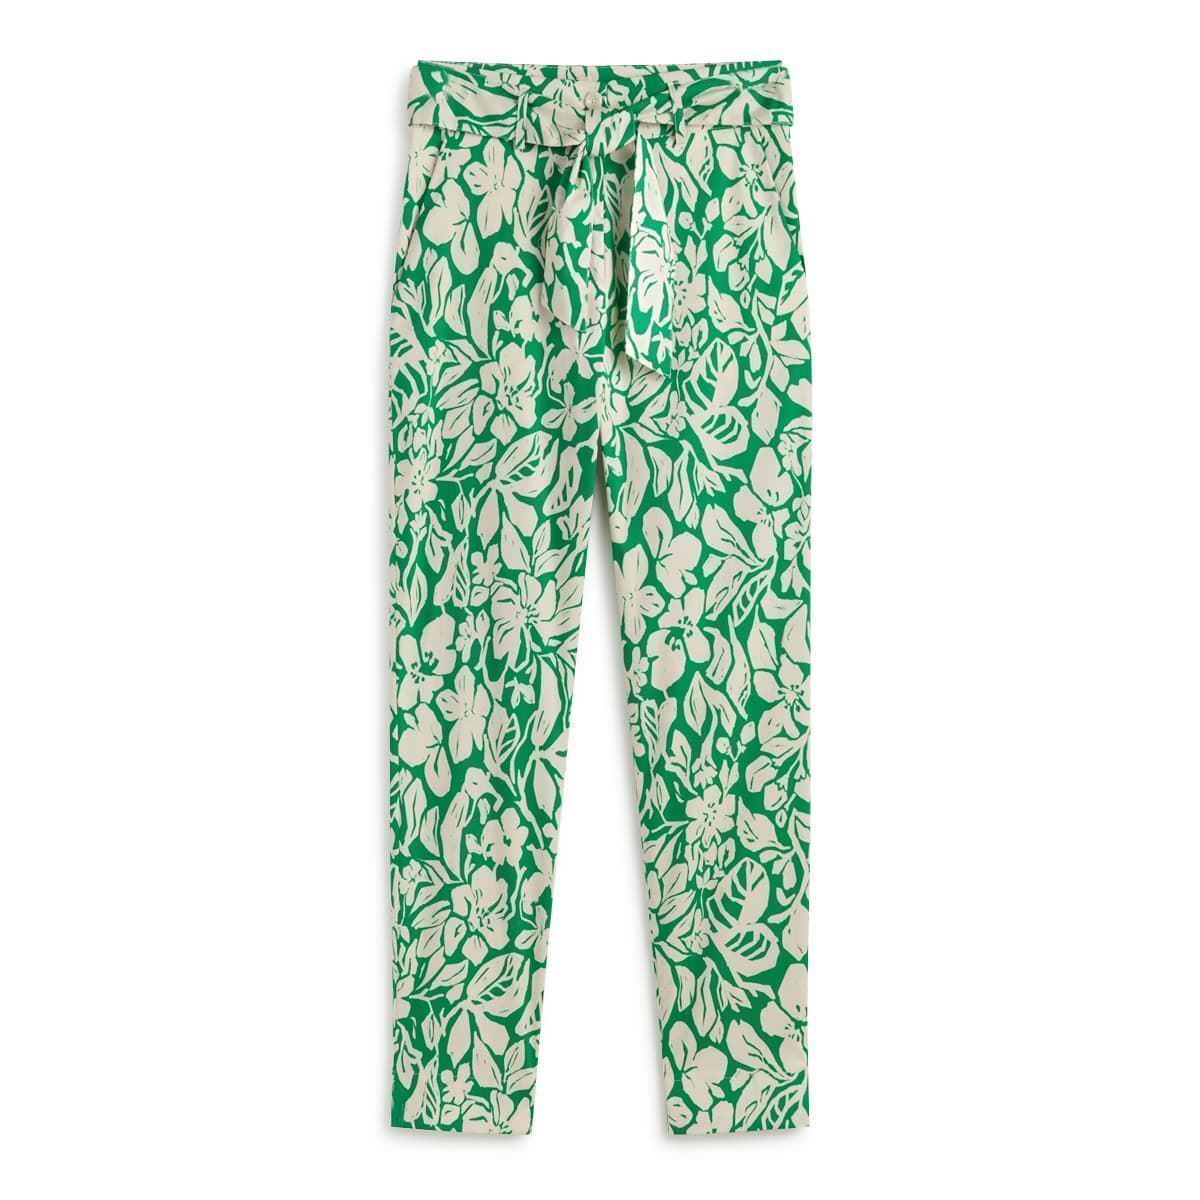 Pantalón verde estampado - Imagen 3